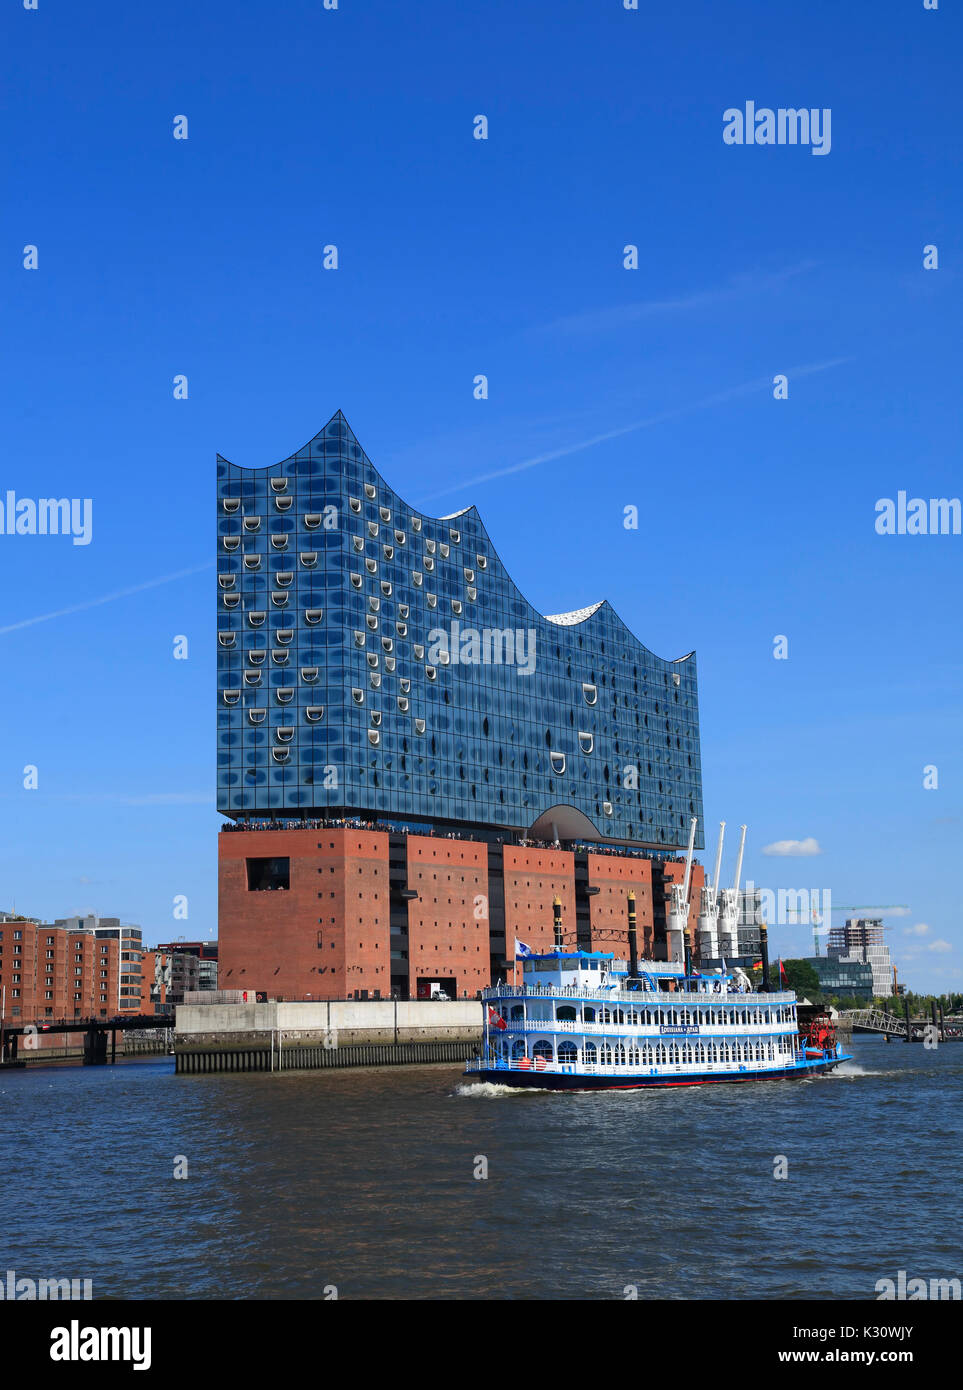 Battello a vapore di fronte Elbphilharmonie concert hall, dal porto di Amburgo, Germania, Europa Foto Stock